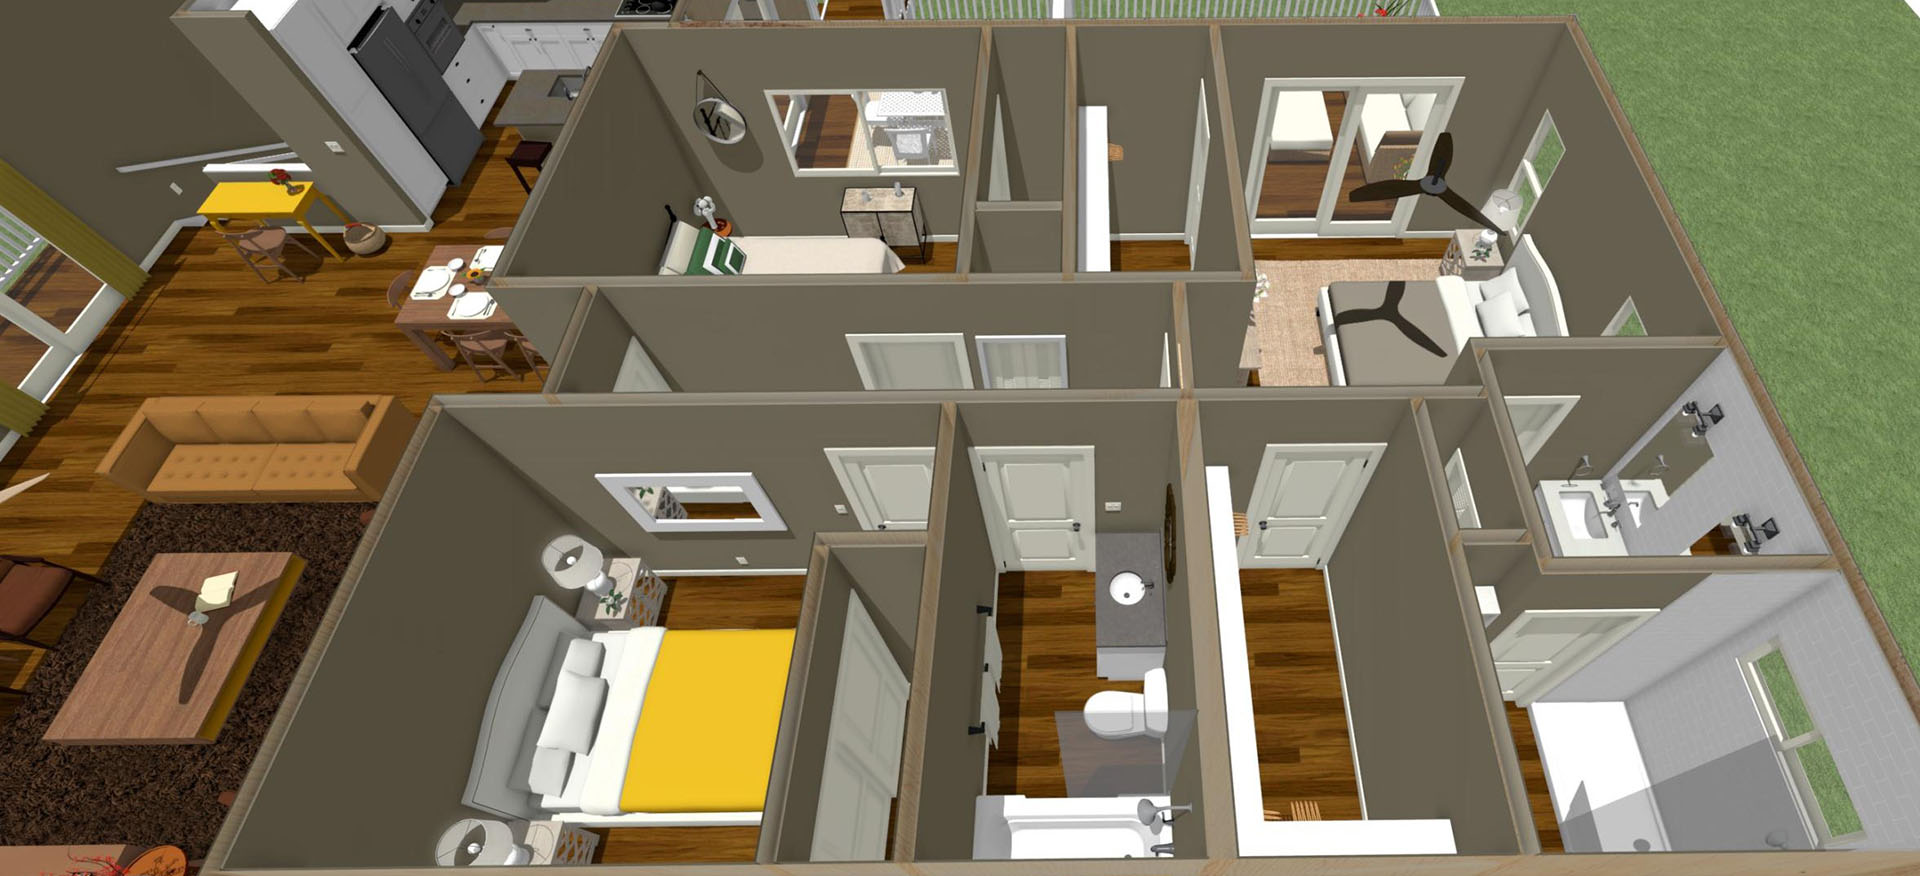 Nohona floor plan overview of main dwelling 2nd floor